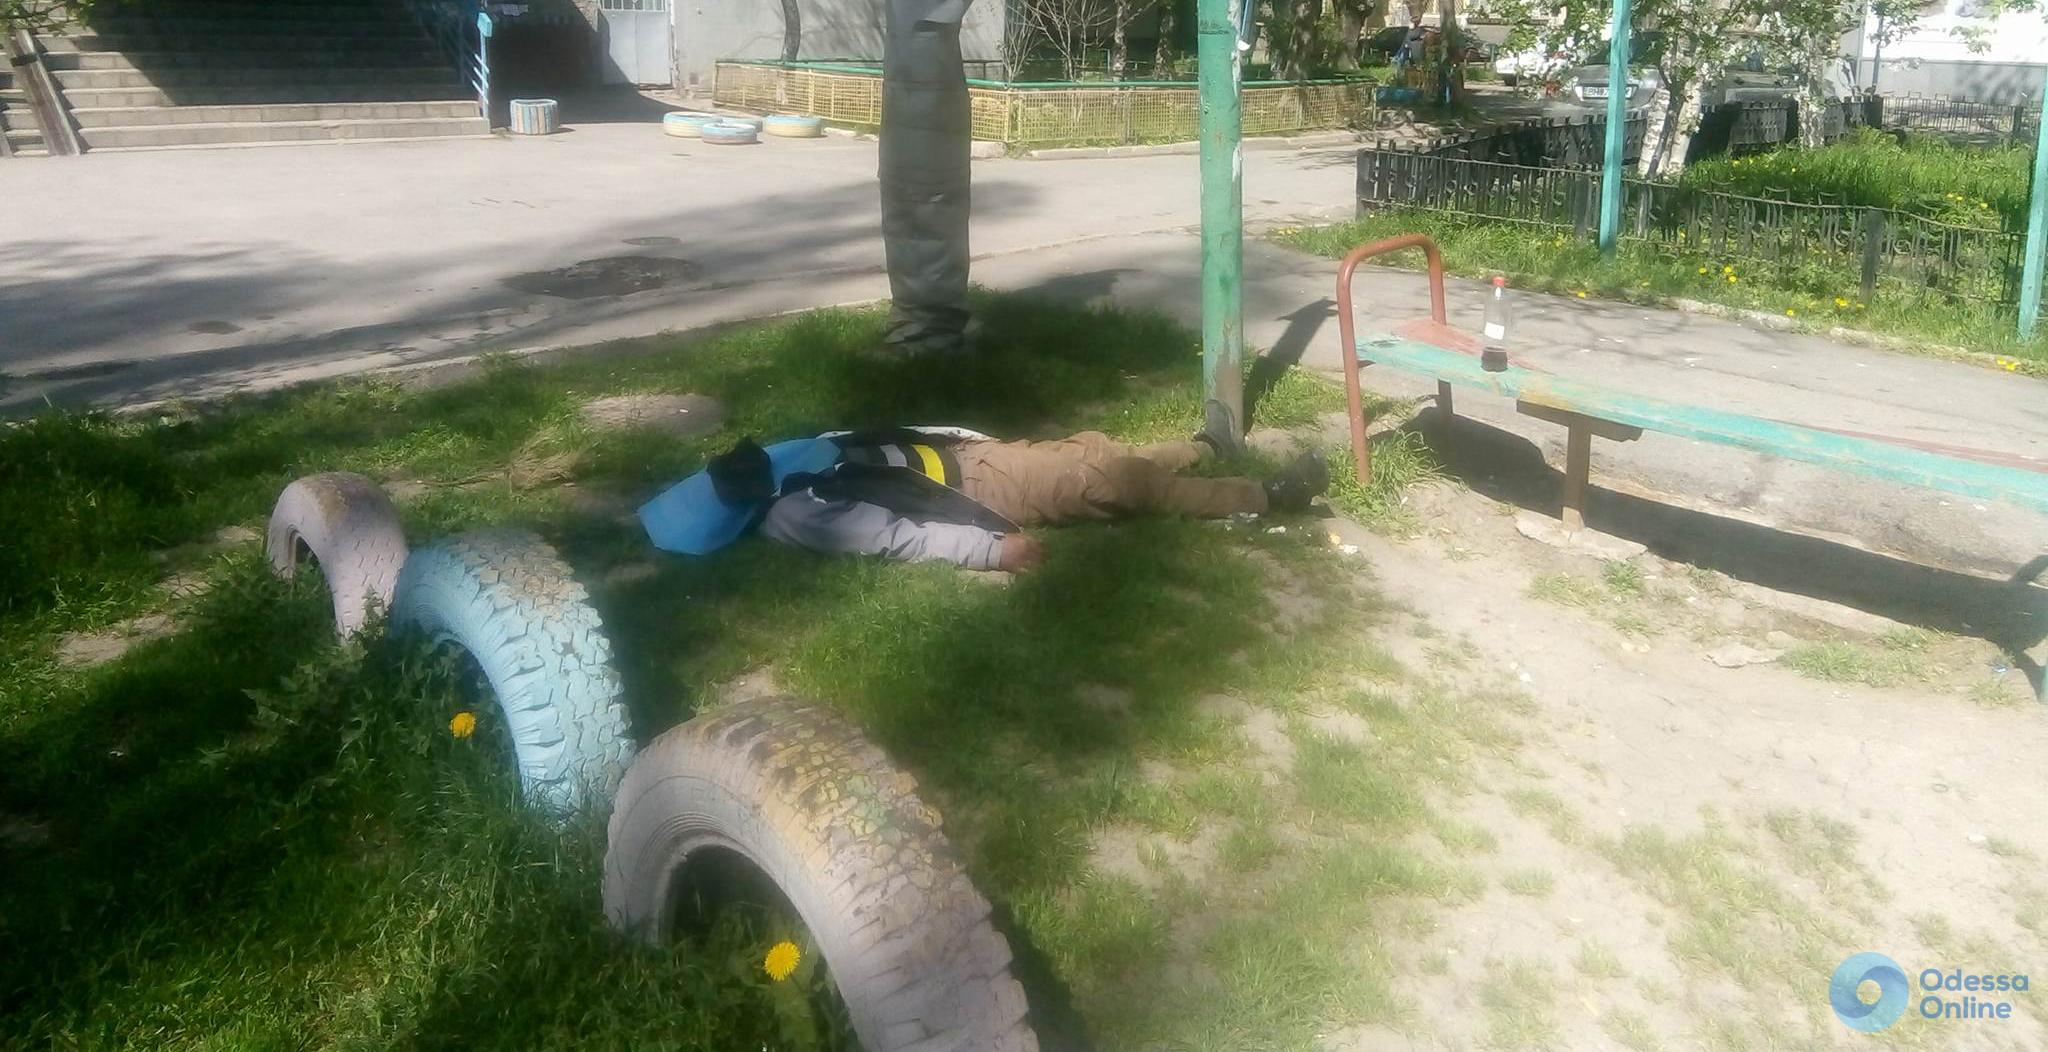 Одесса: на 4-й станции Большого Фонтана обнаружили труп (осторожно, фото)